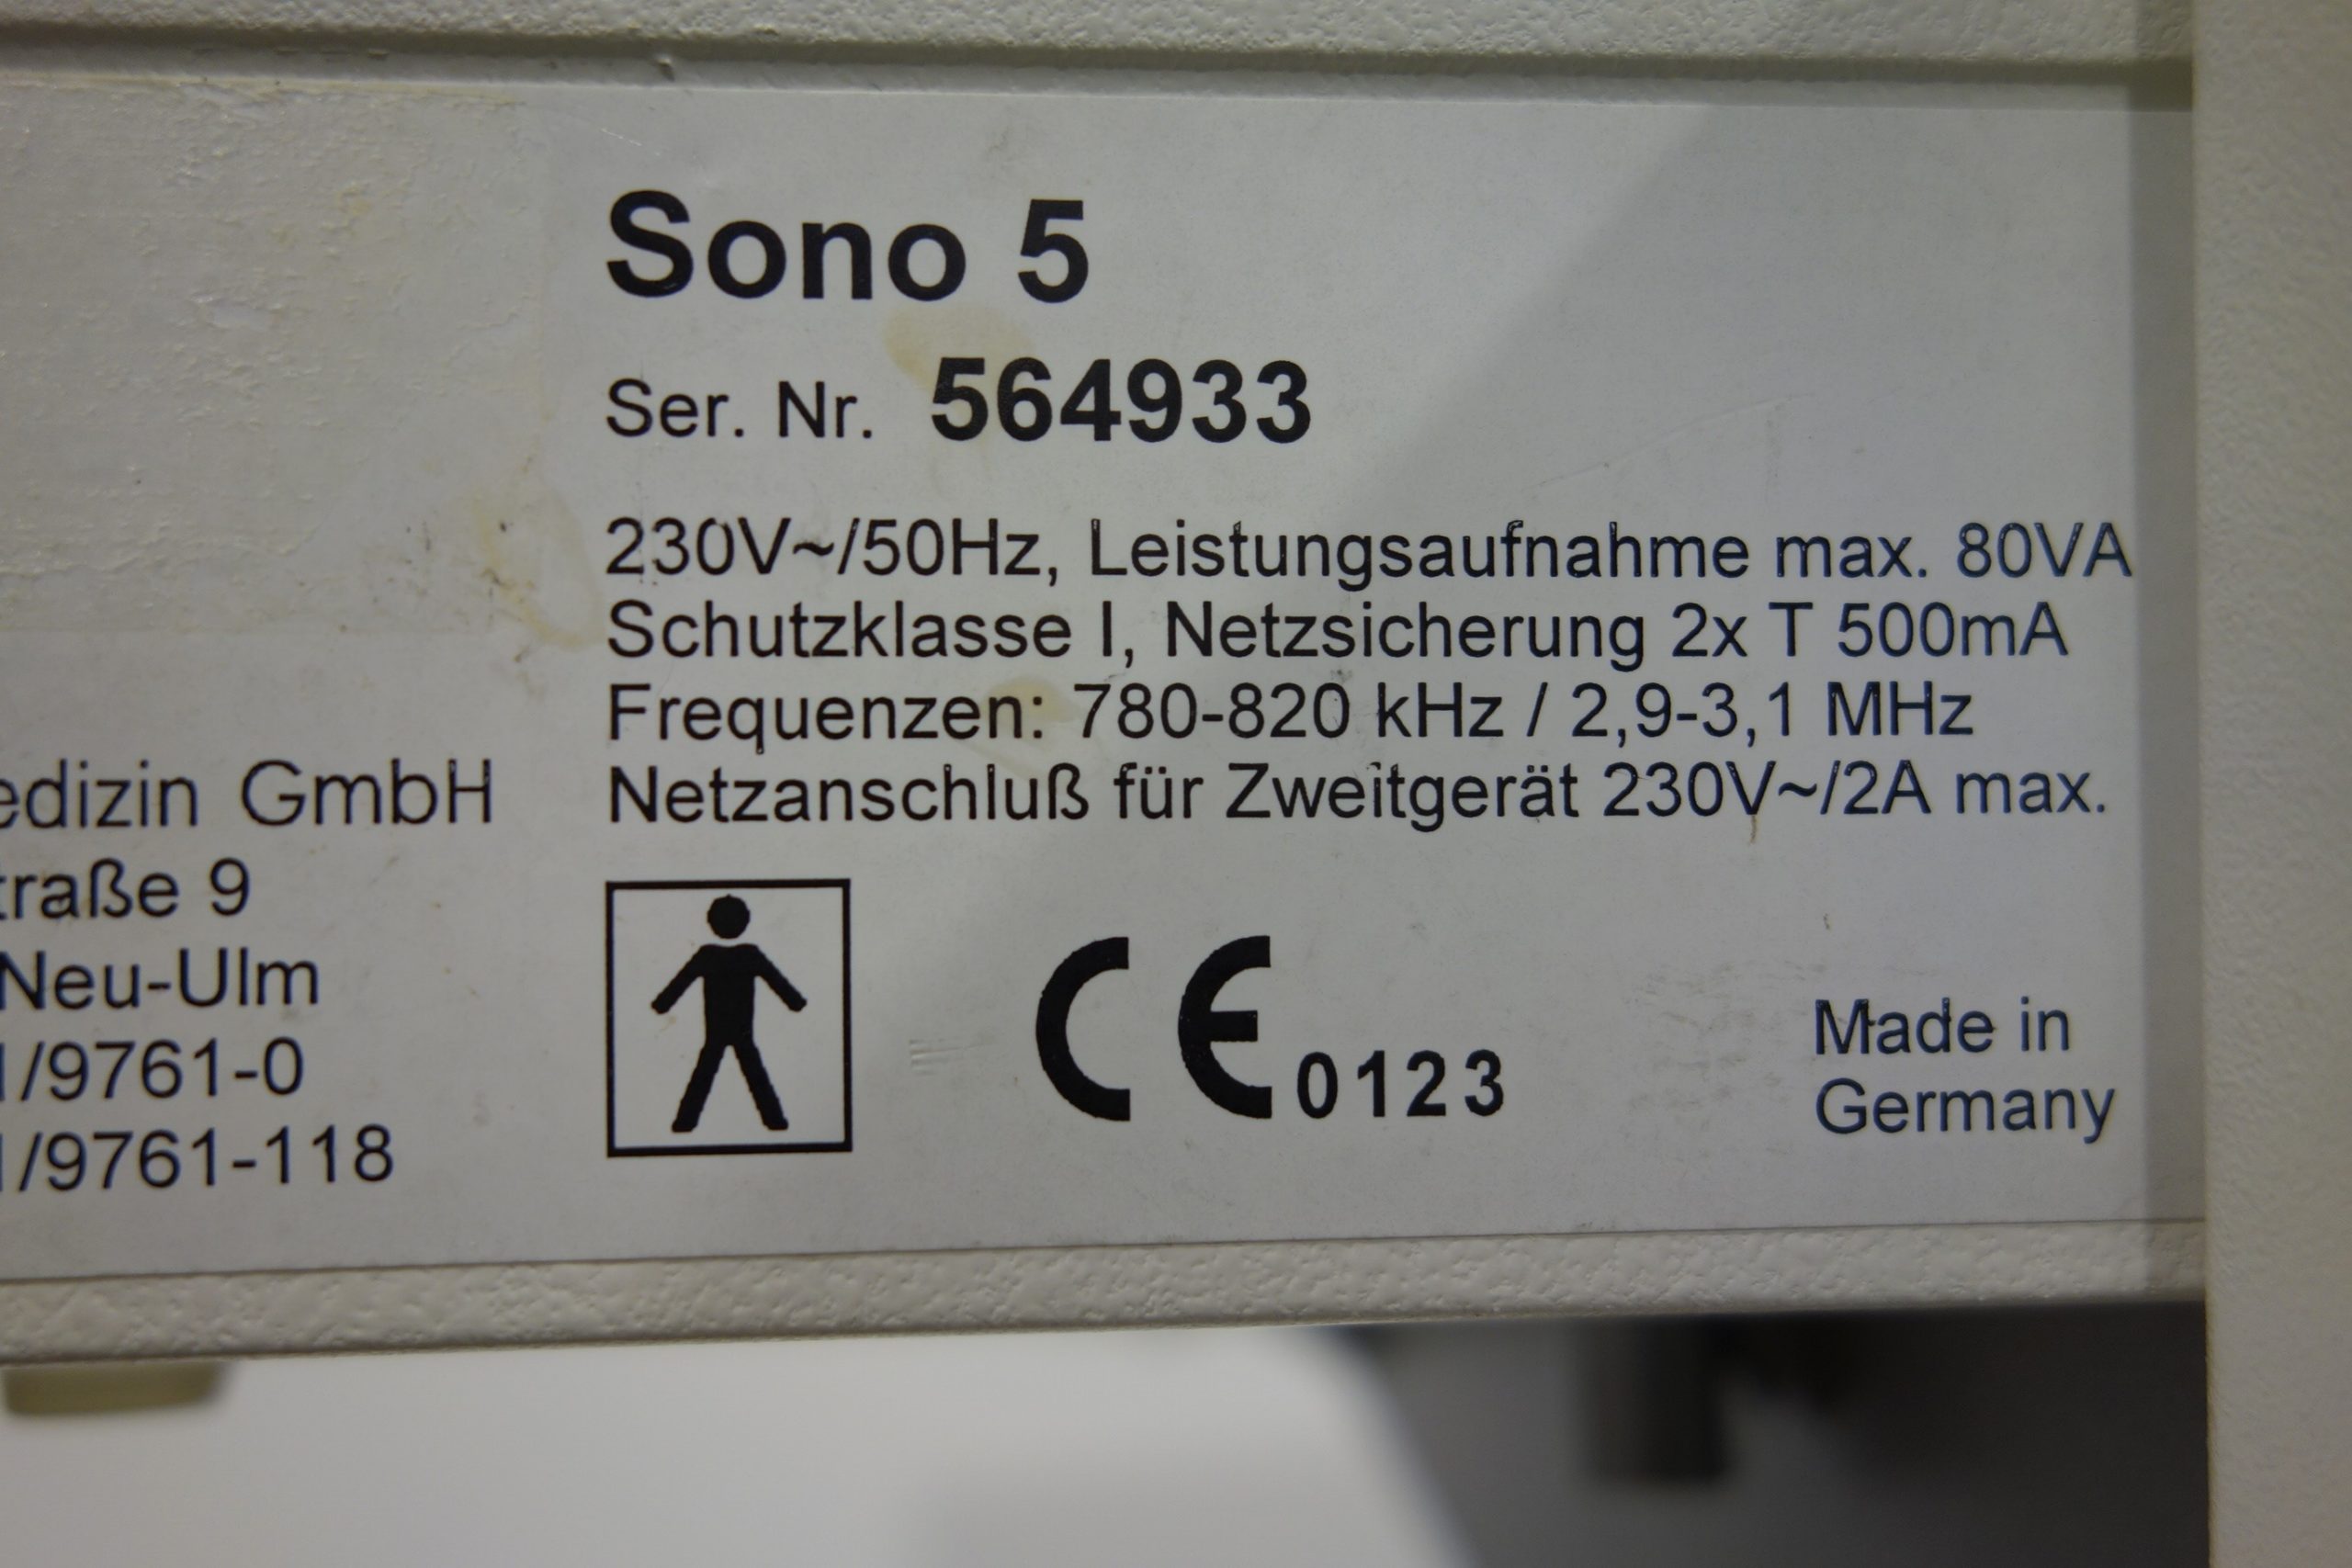 zimmer-sono-5-mit-3-mhz-und-0-8-mhz-sonde-auf-fahrgstell-06